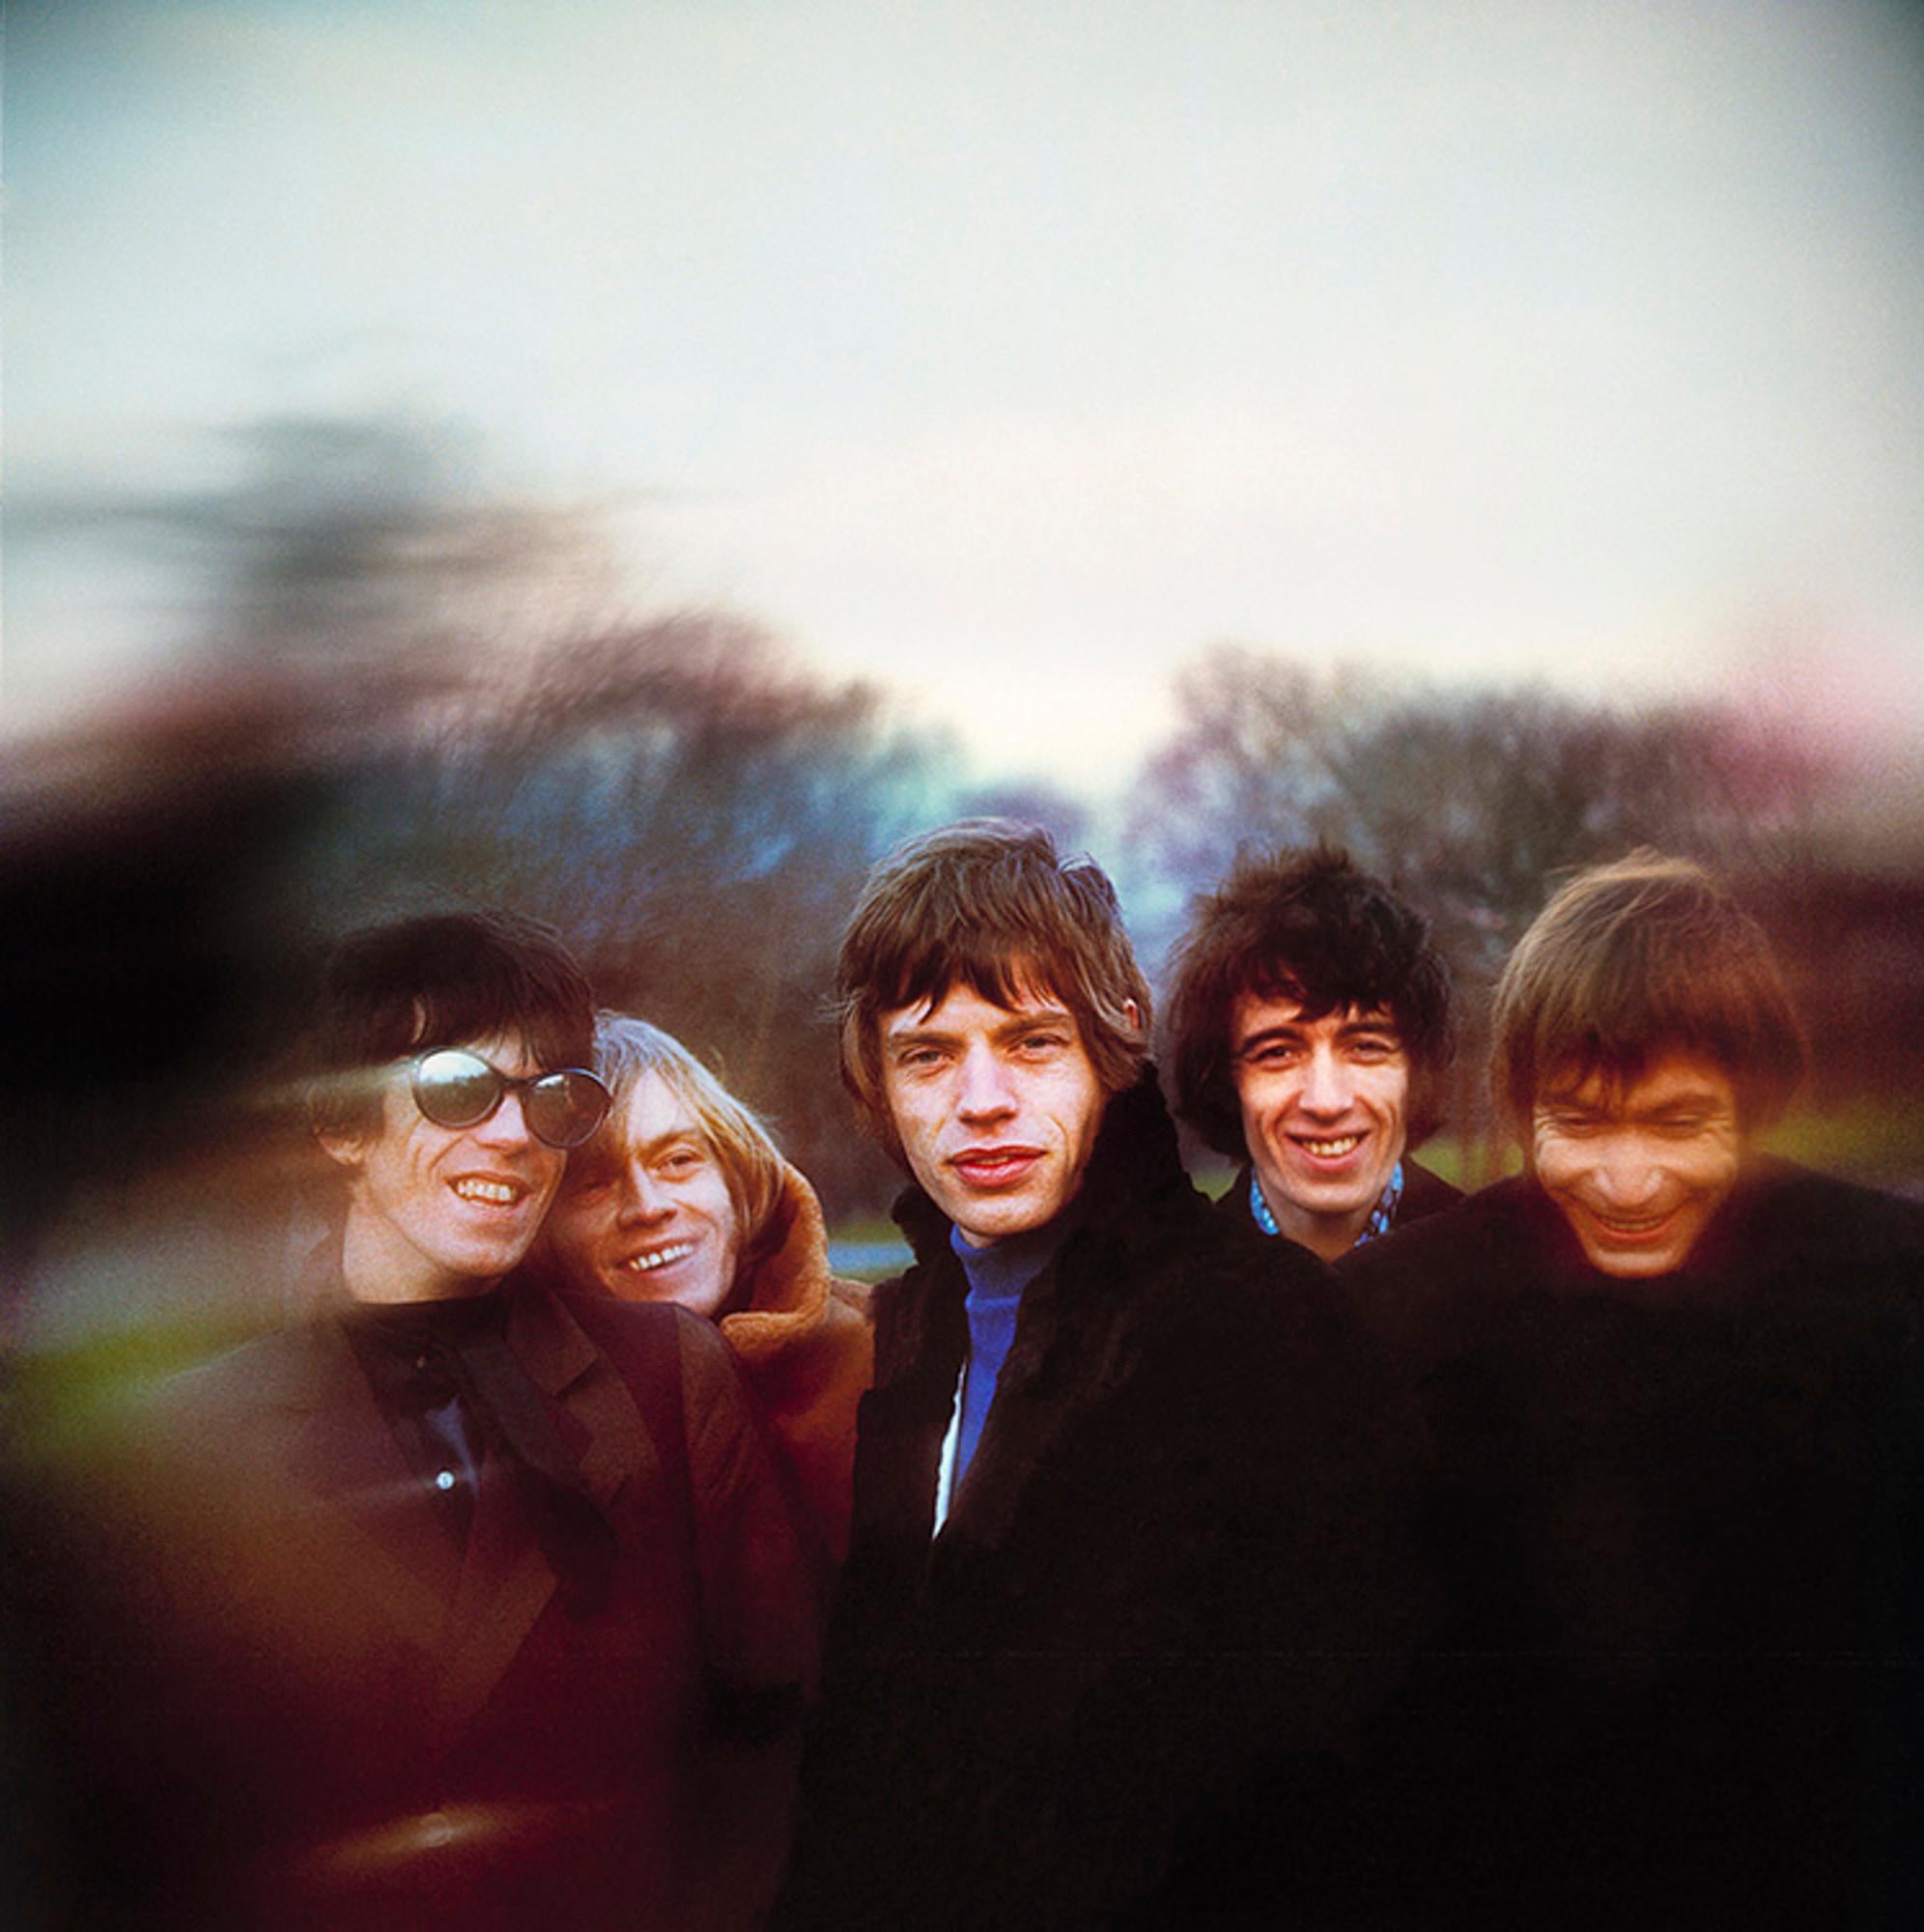 Impression C.I.C. signée et numérotée par Gered Mankowitz.

Le groupe de rock britannique The Rolling Stones (Mick Jagger, Keith Richards, Charlie Watts, Bill Wyman et Brian Jones) photographié sur Primrose Hill à Londres, 1966.

Tailles disponibles